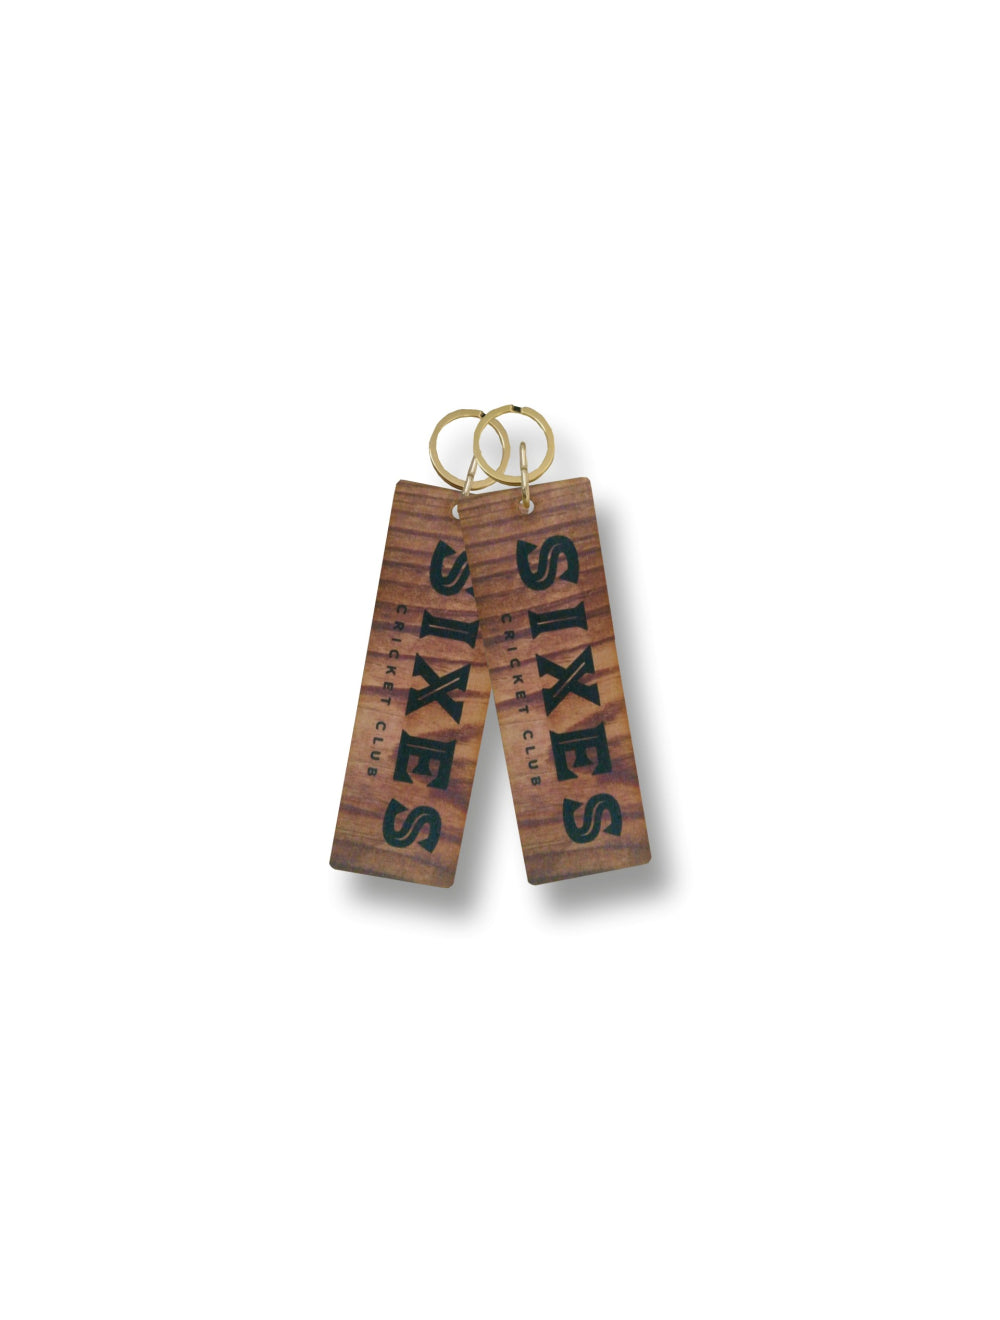 Etiquetas de llave de madera de piso de roble